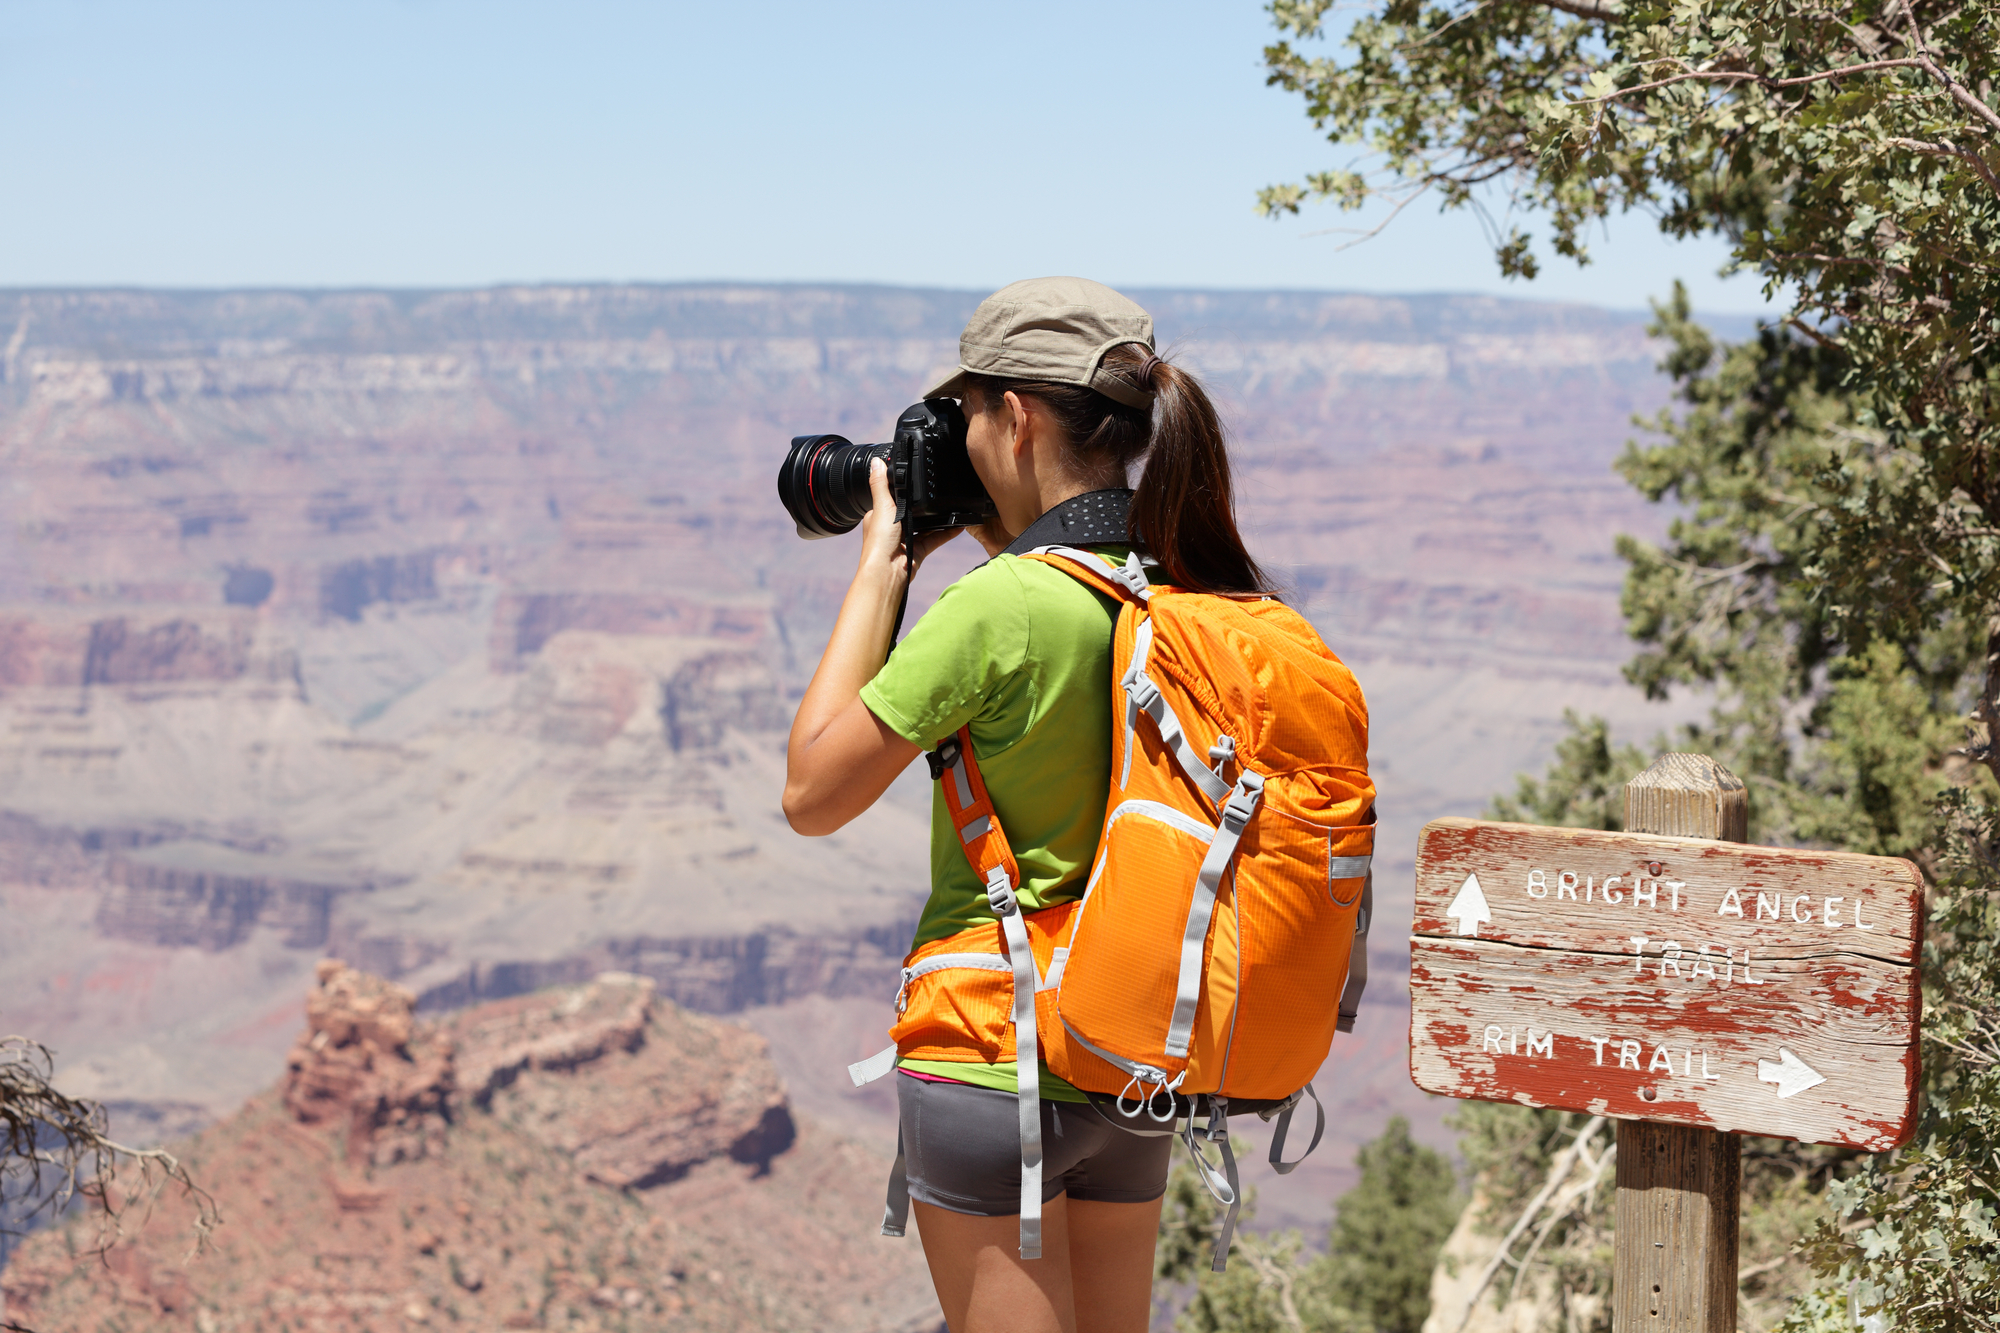 Девушка с фотоаппаратом в горах